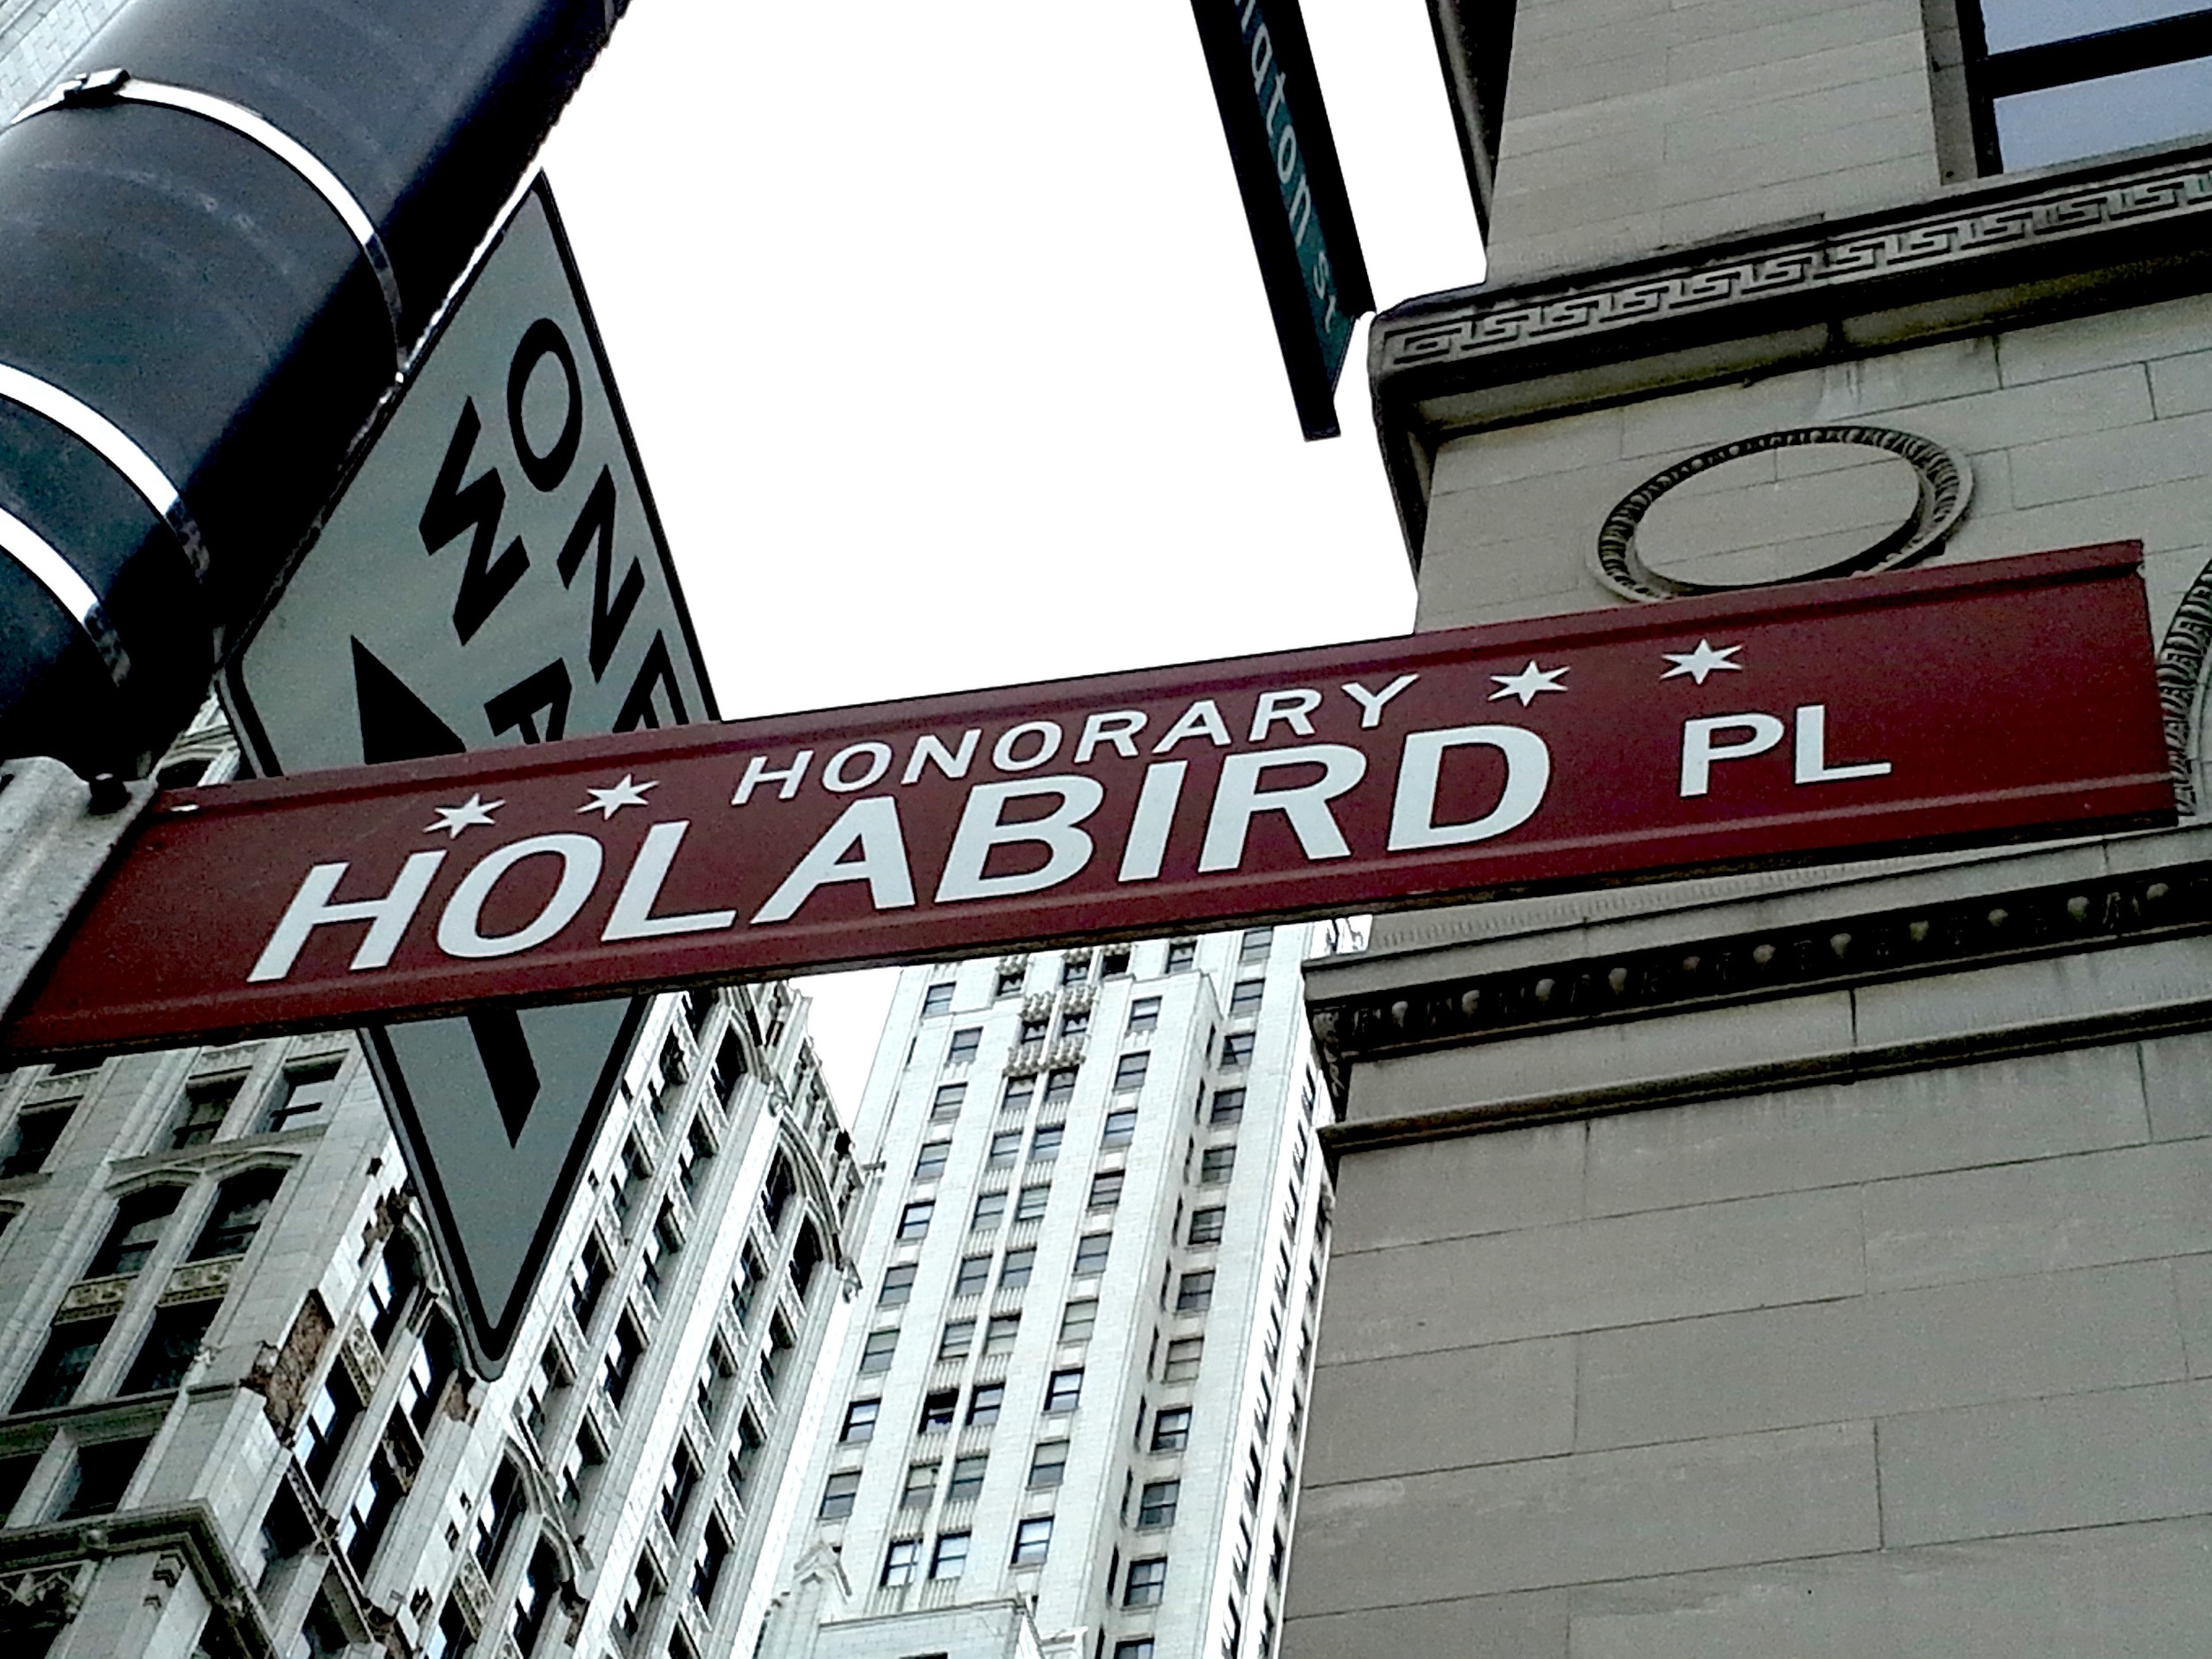 Holabird Pl - HonoraryChicago.com - Architecture firm, Holabird & Root